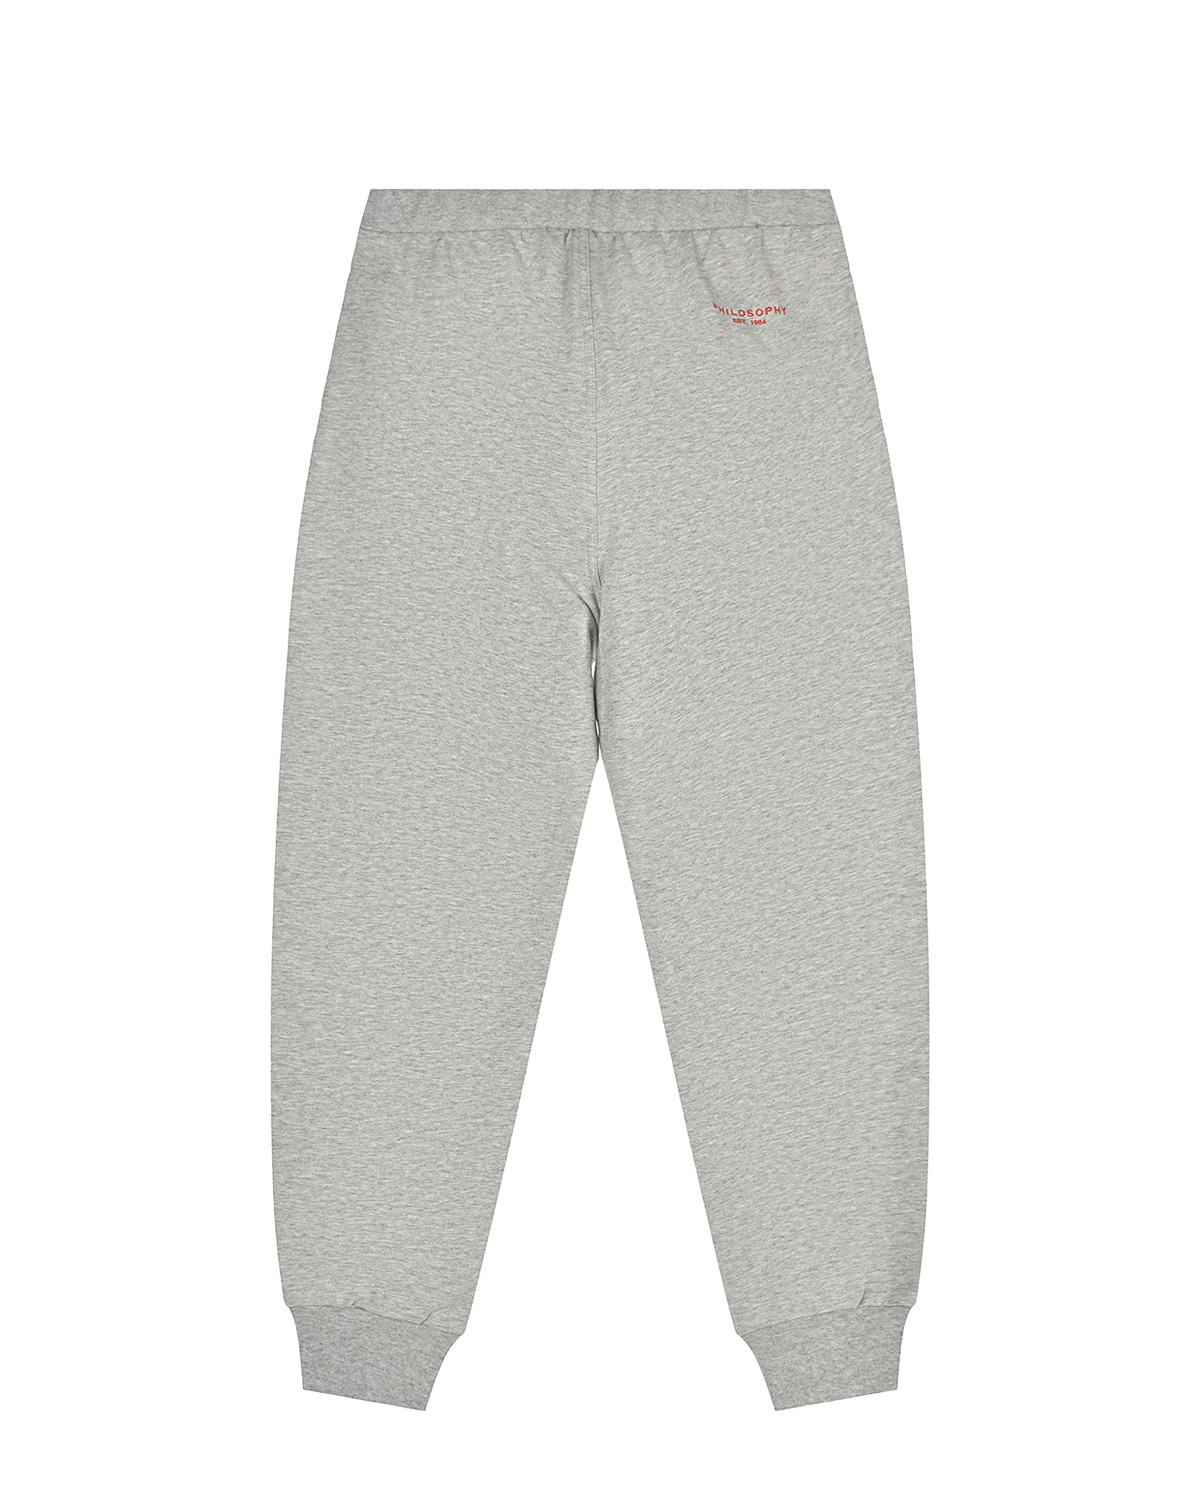 Серые спортивные брюки Philosophy детские, размер 140, цвет серый - фото 2